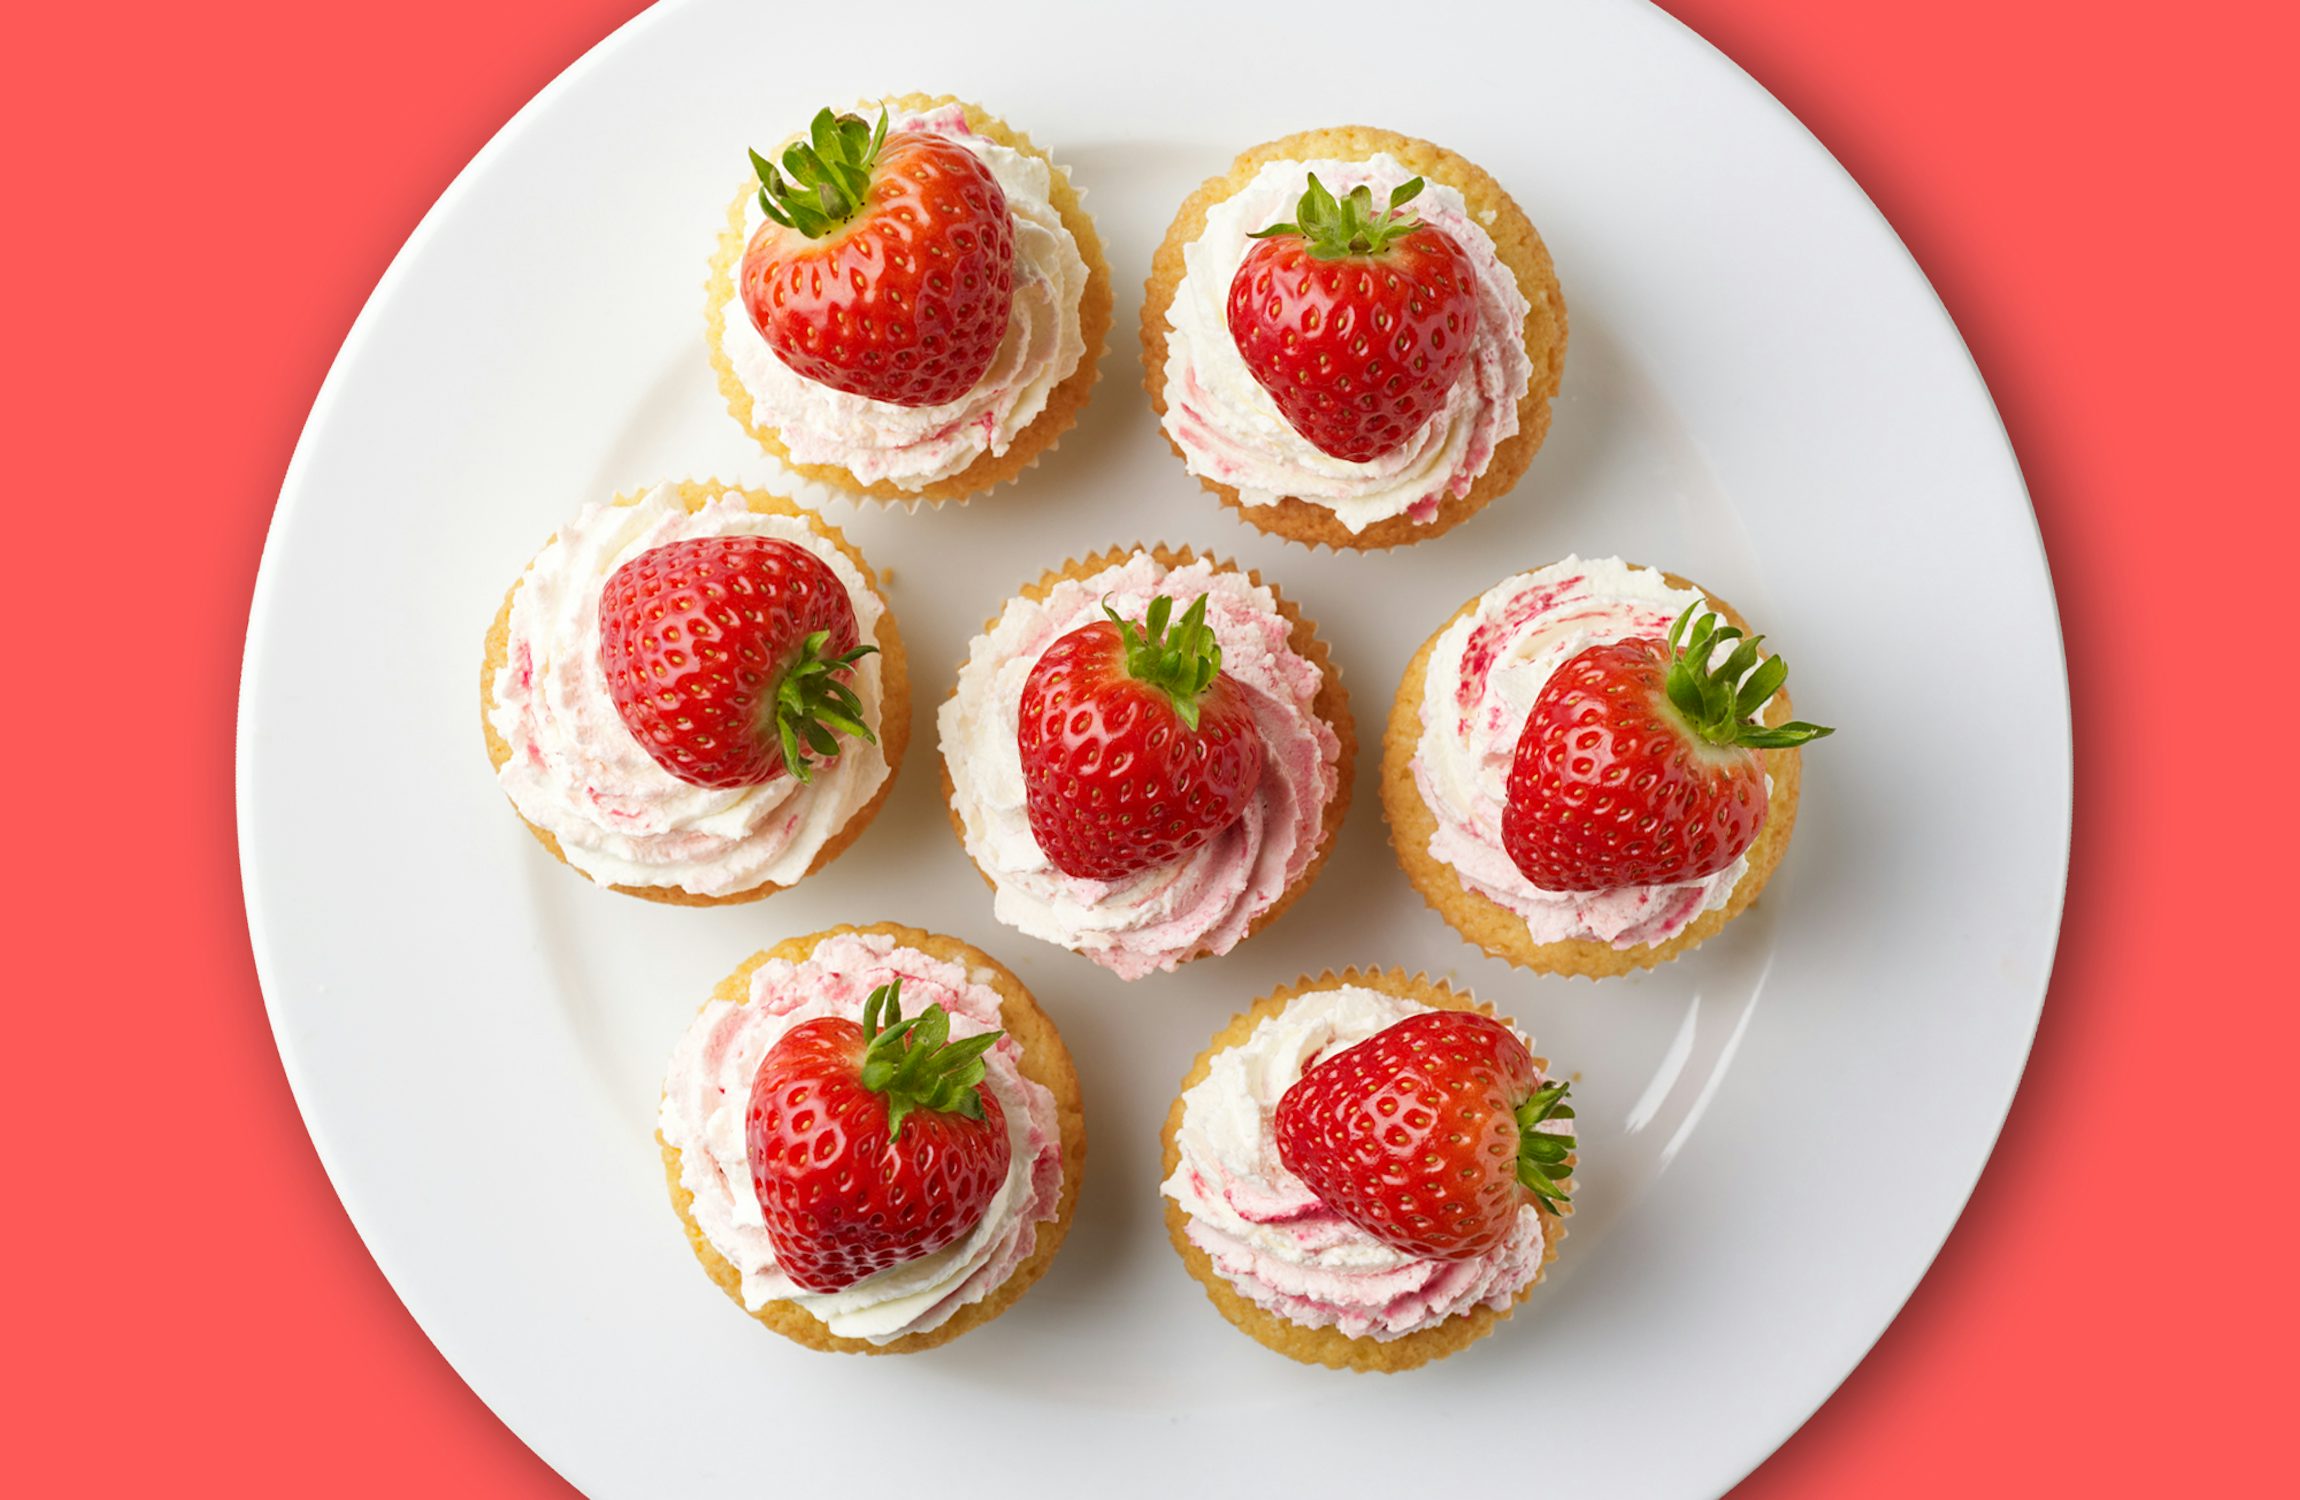 Signature Strawberry & Cream Cupcakes